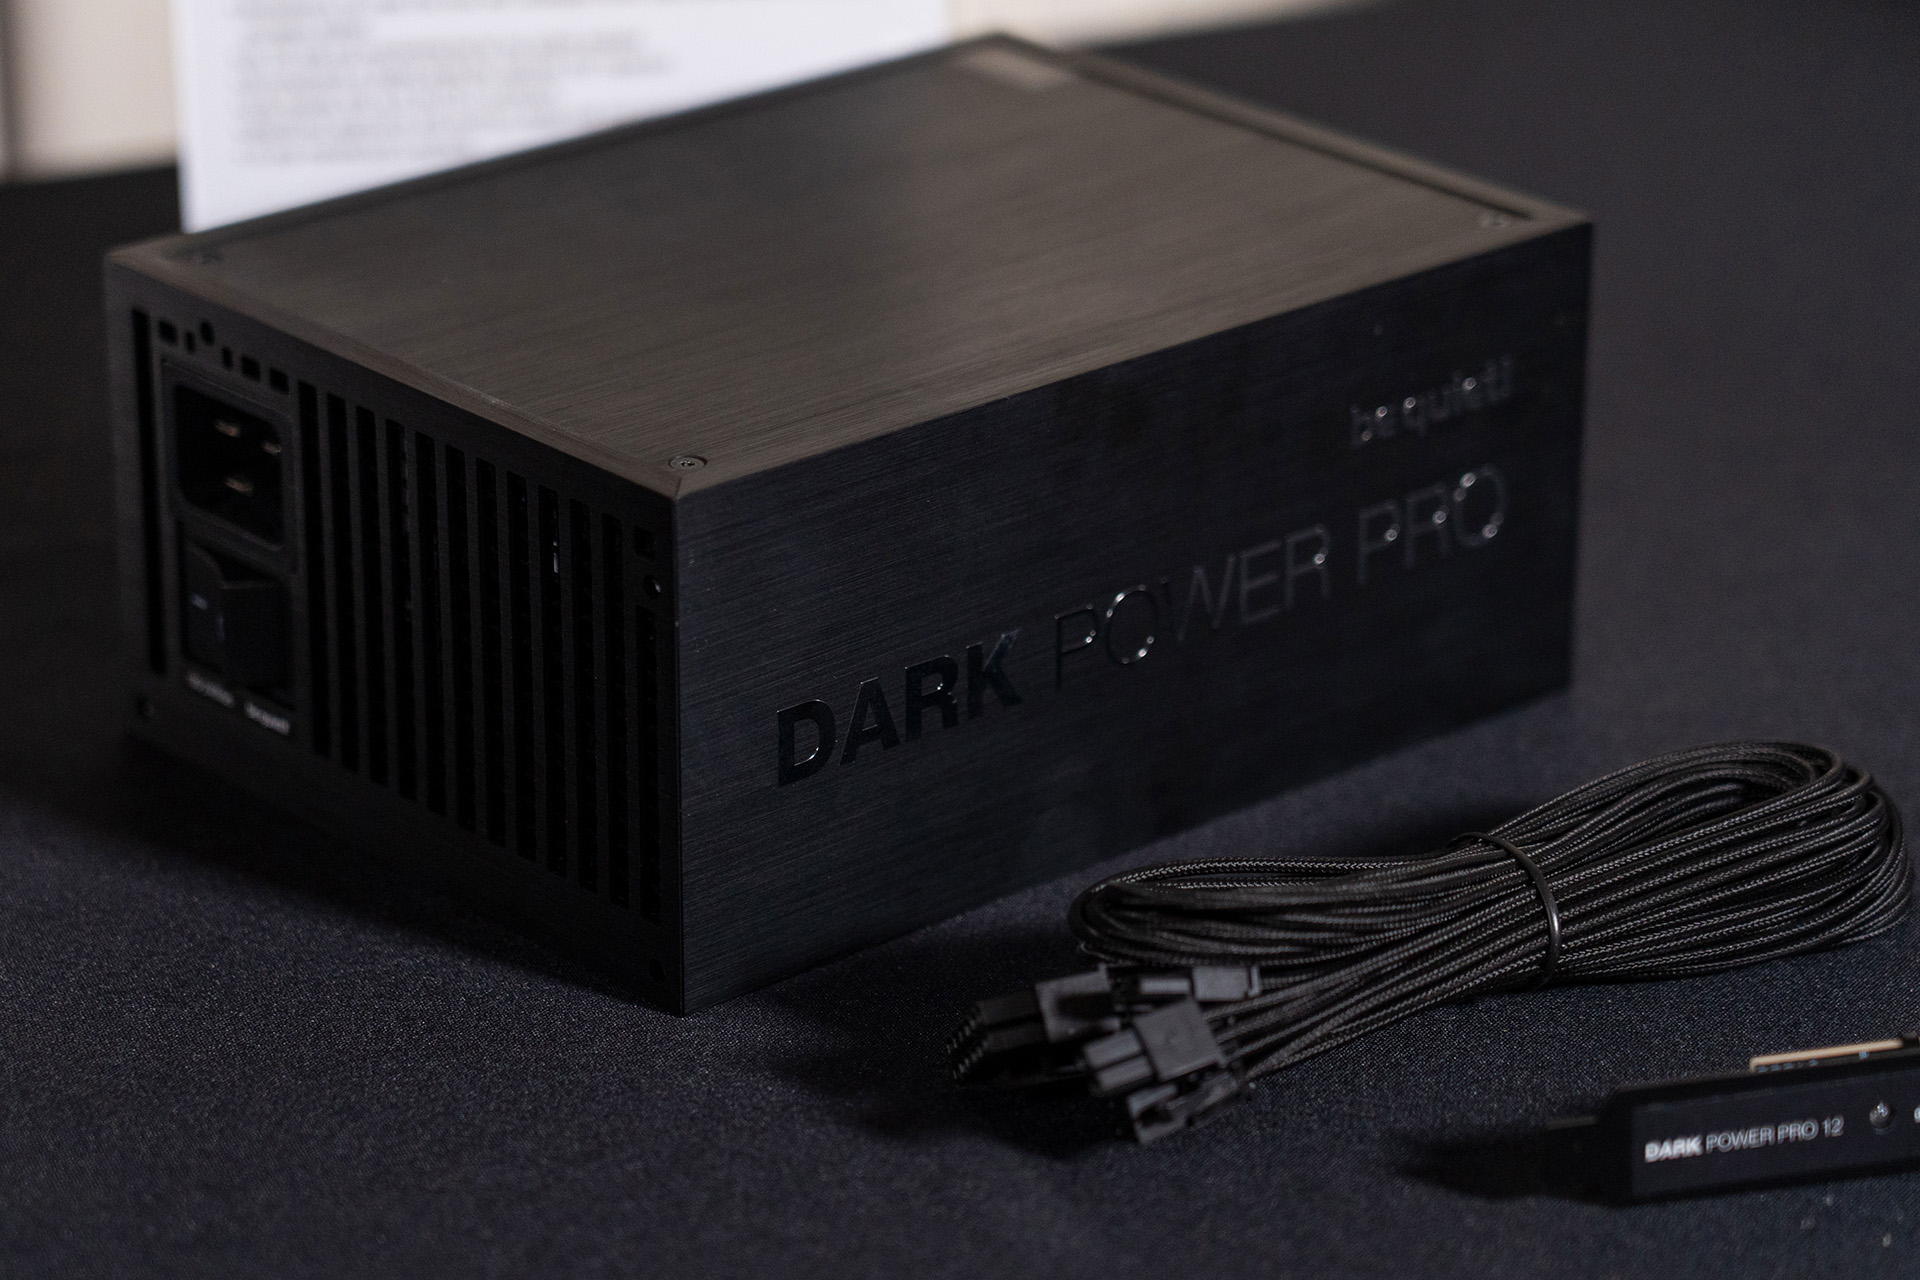 13 пауэр. Be quiet! Dark Power Pro 12 1500w. Dark Power Pro 12 1200w. Блок питания be quiet! Dark Power Pro 12 1500w. Dark Power Pro 12 1500w [bn312.